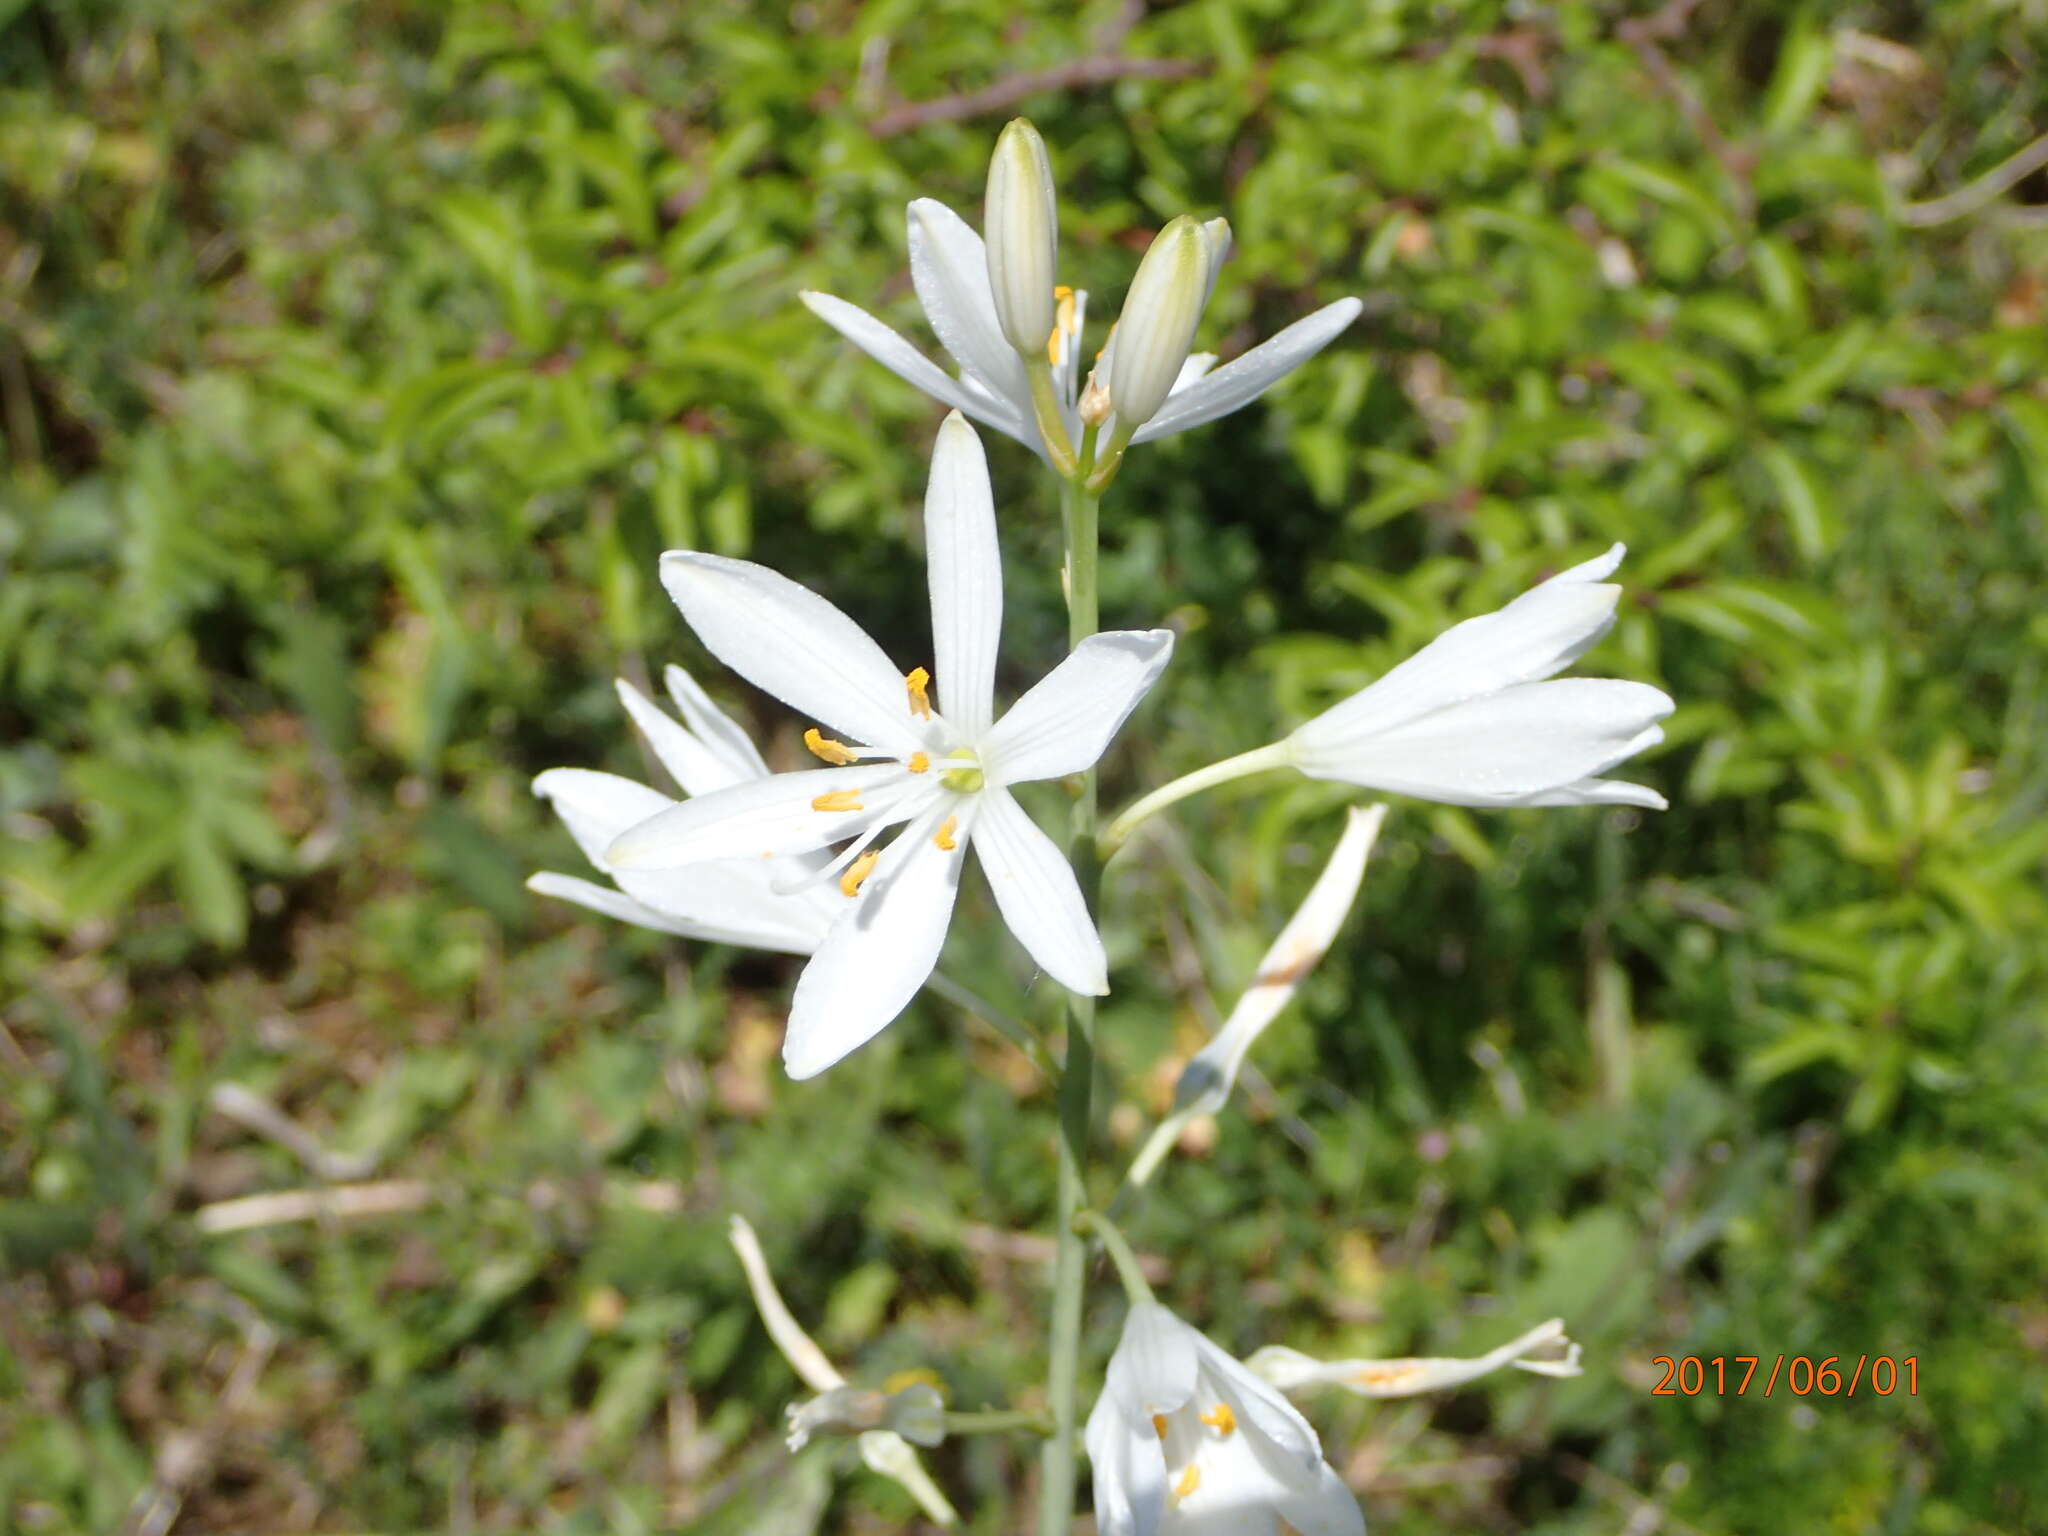 Image of St. Bernard’s lily